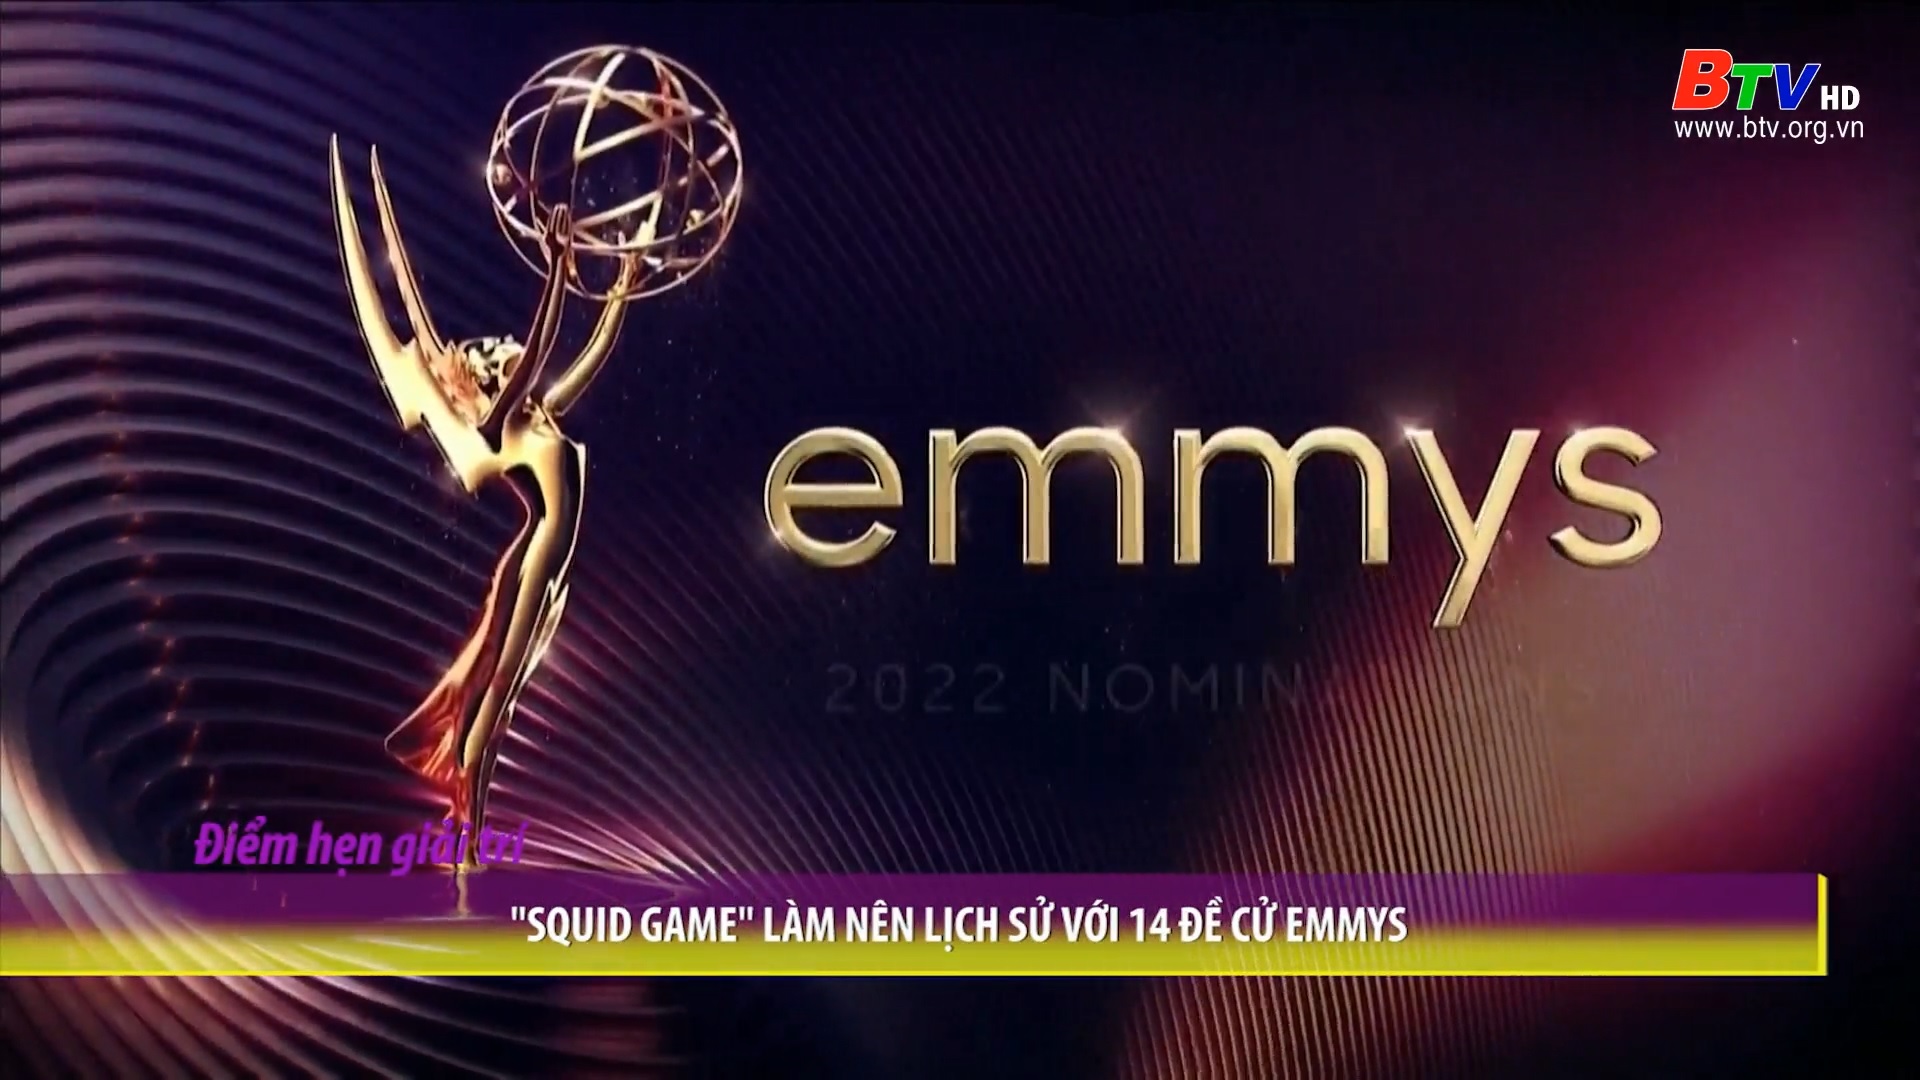 “Squid Game” làm nên lịch sử với 14 đề cử Emmys